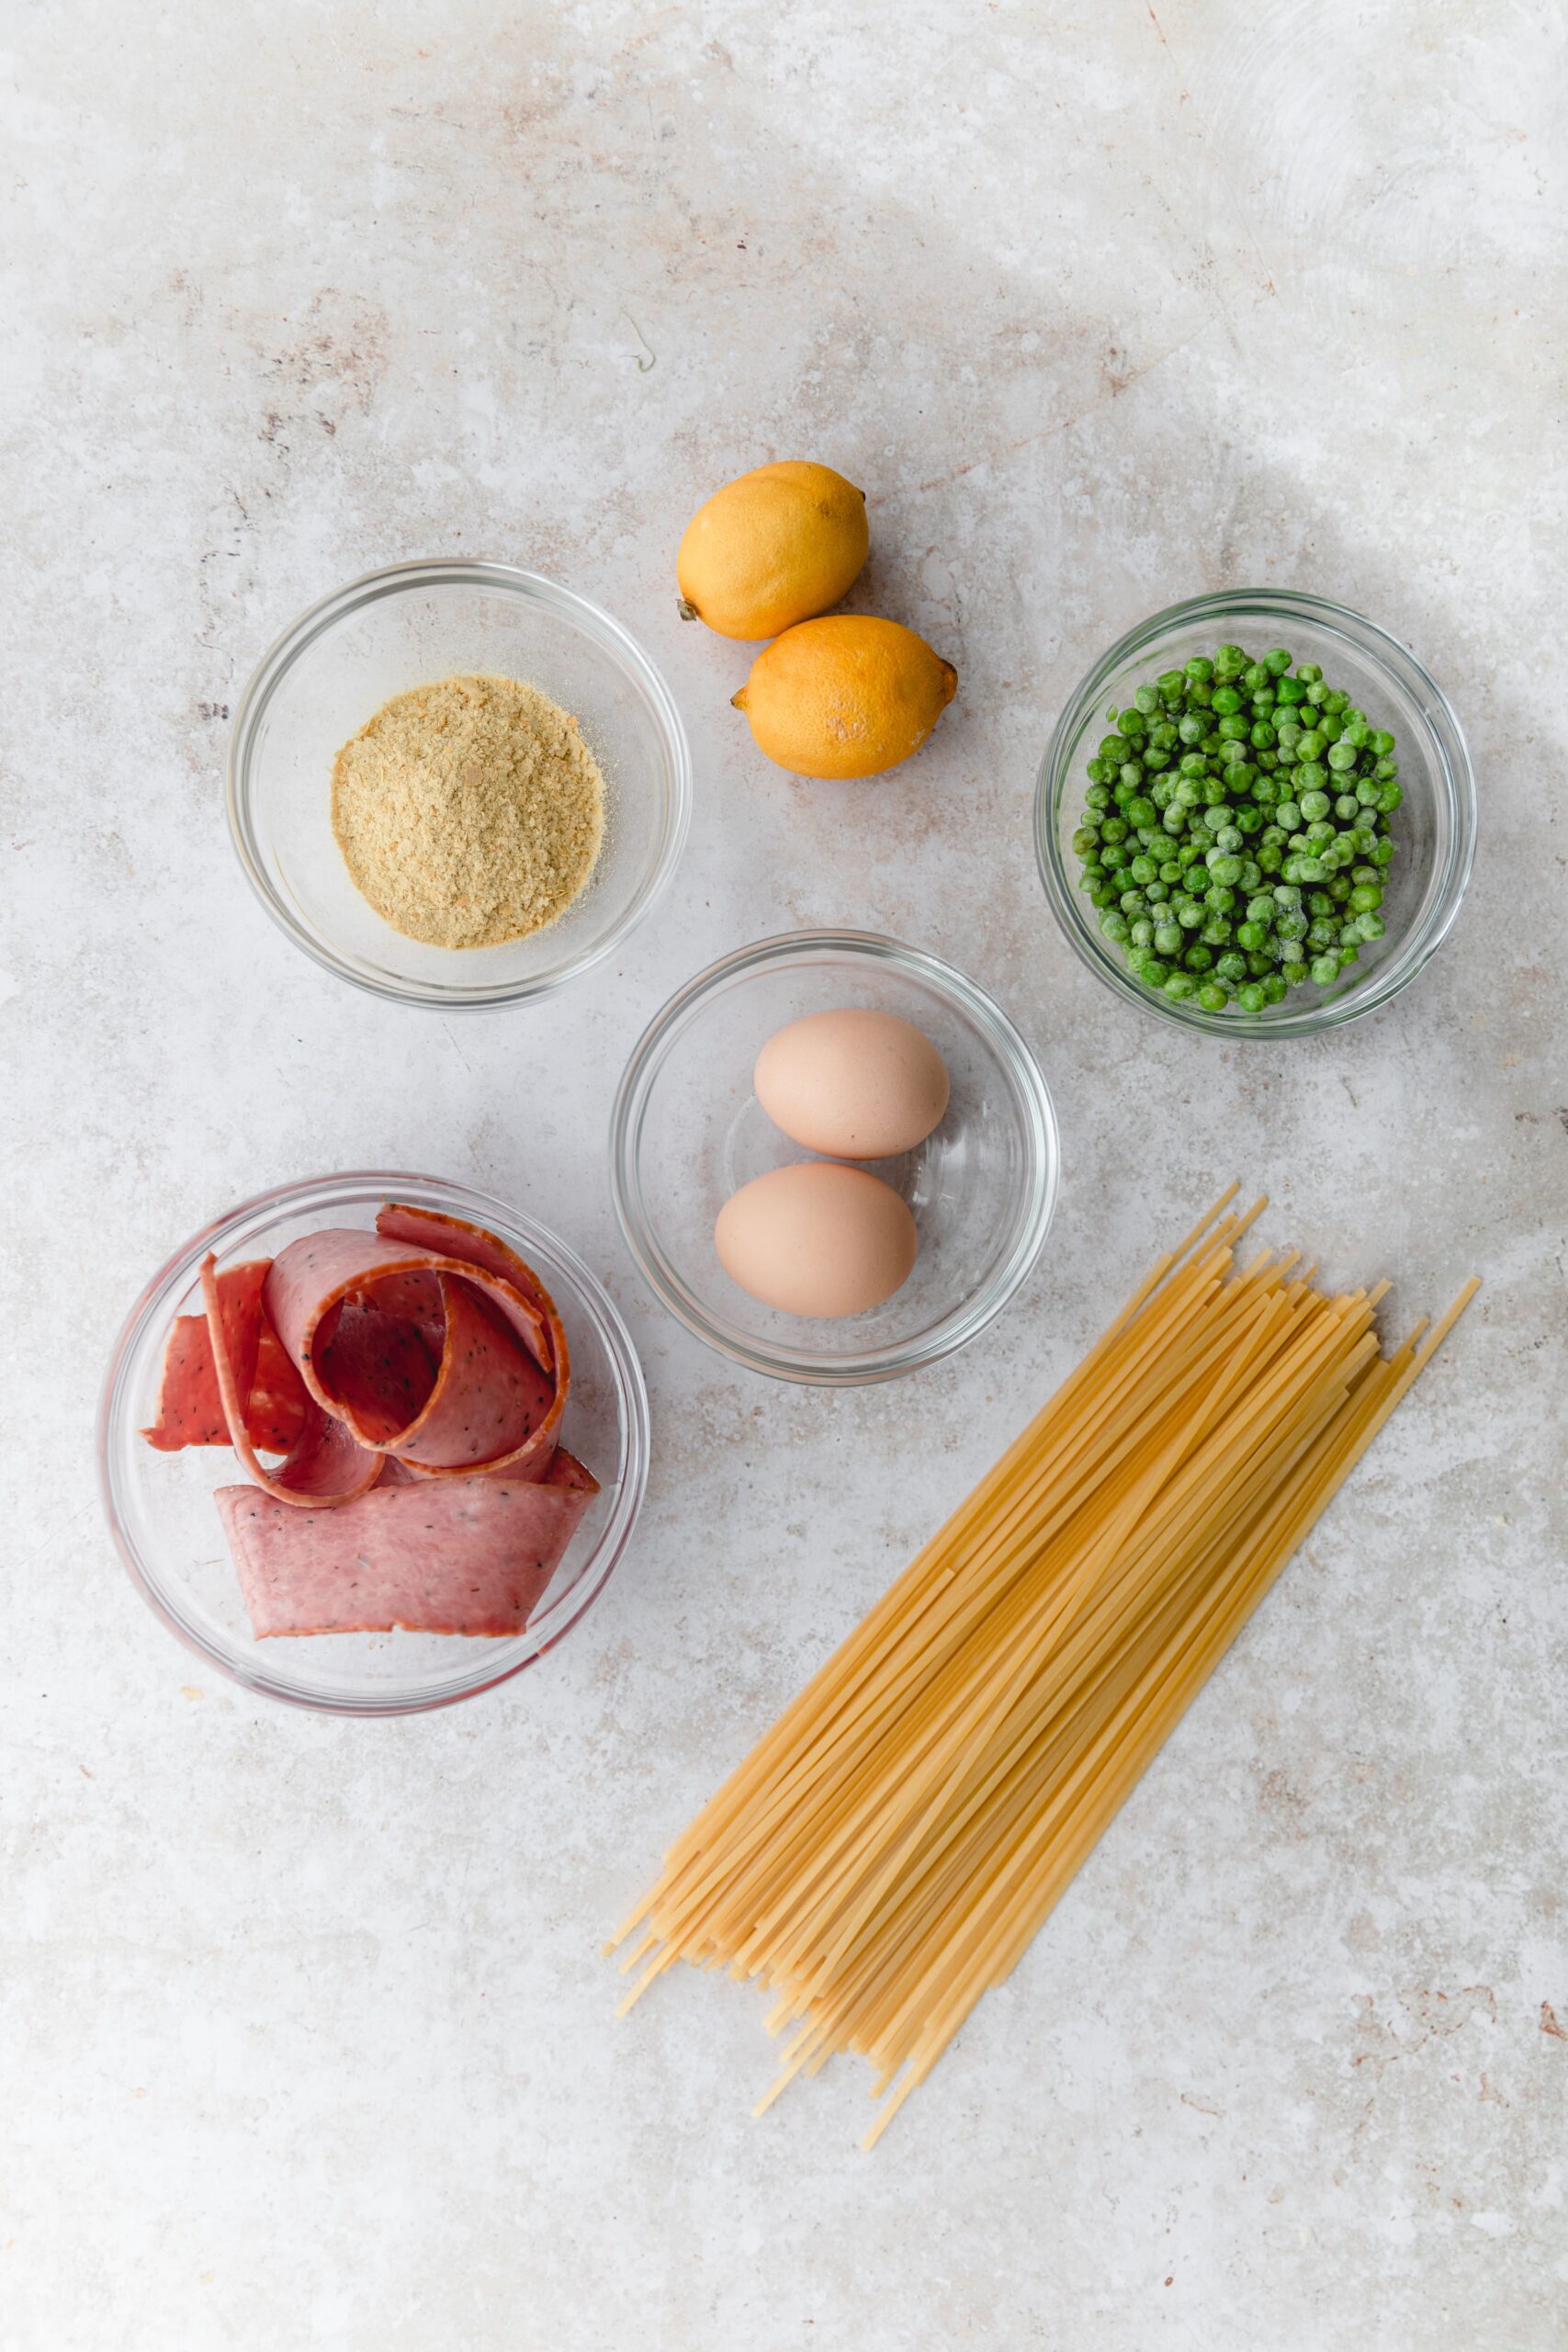 ingredients for pasta carbonara
